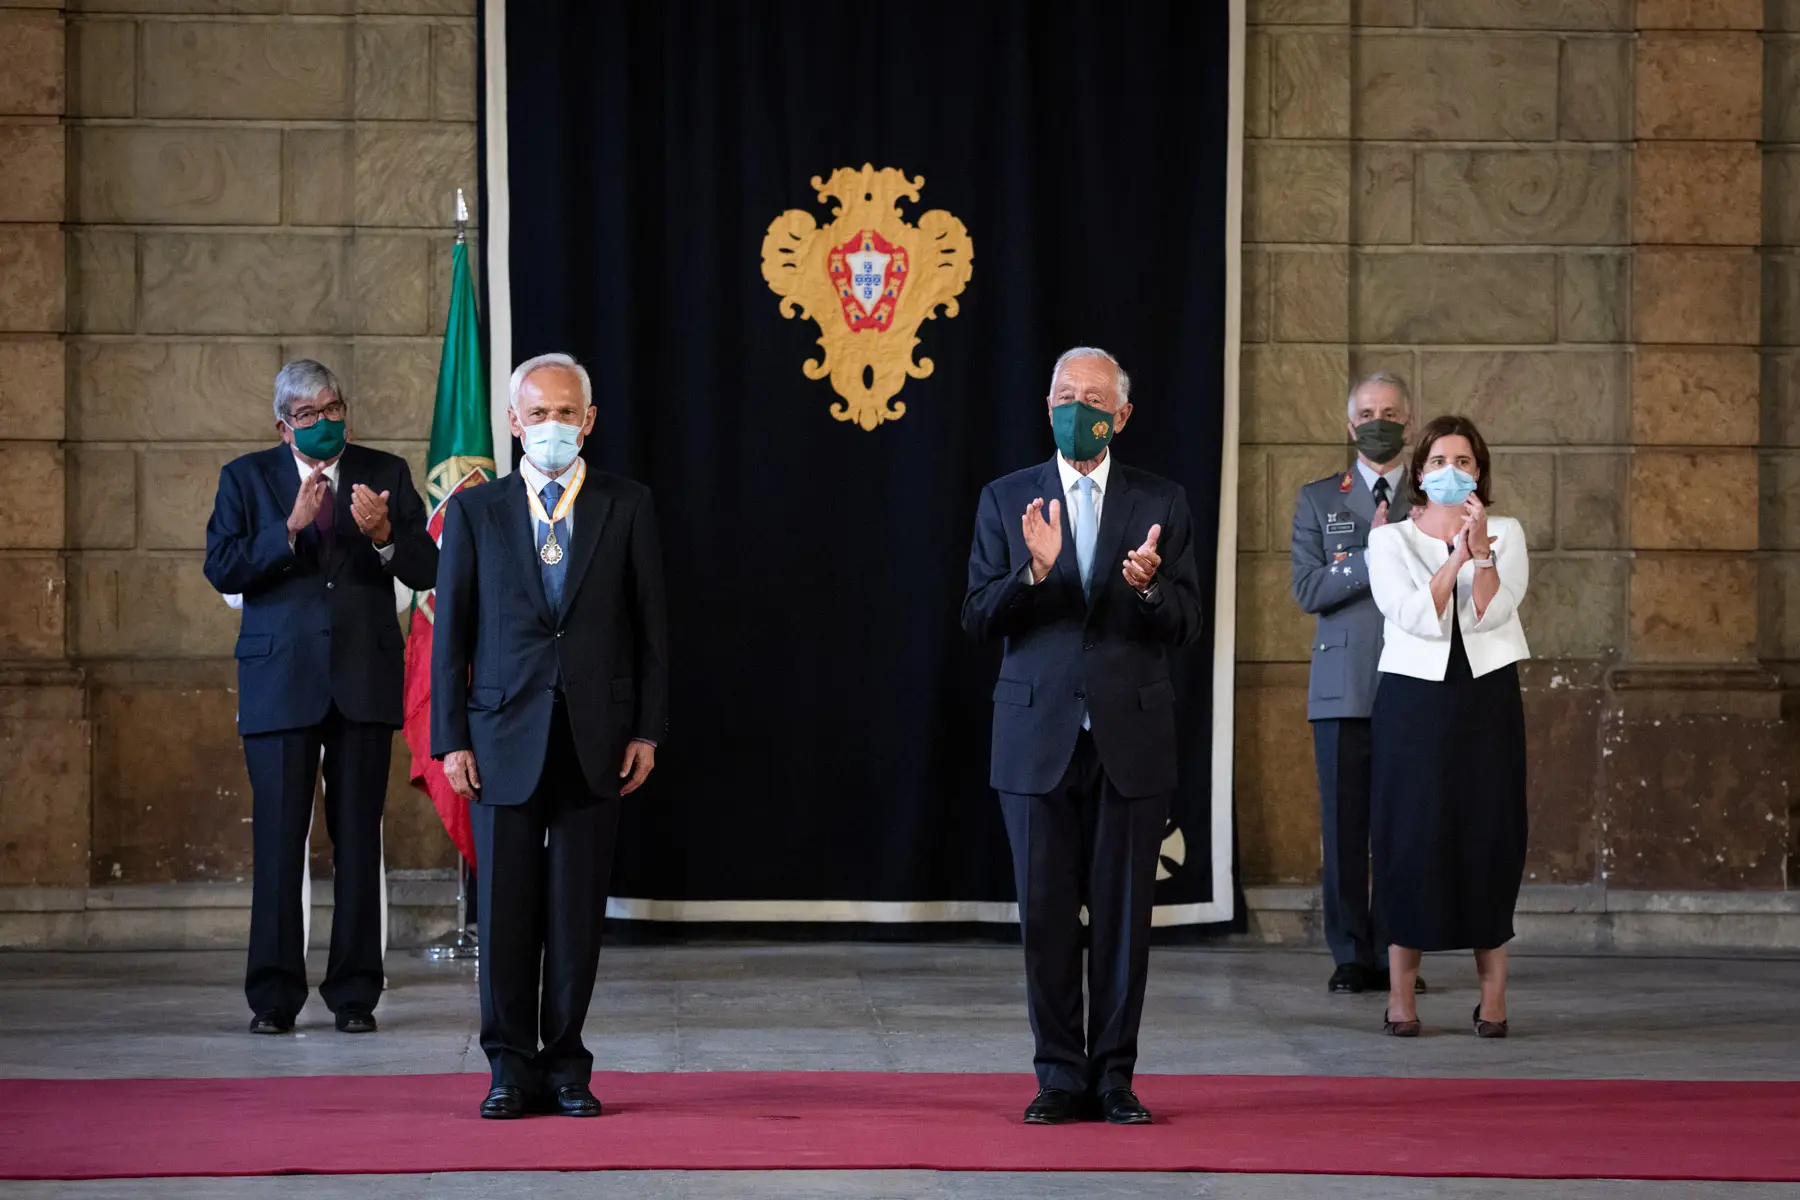 Cerimónia de Imposição de condecorações a militares de Abril de 1974 com a Ordem da Liberdade. Picadeiro Real do Palácio de Belém, 19 de agosto de 2021